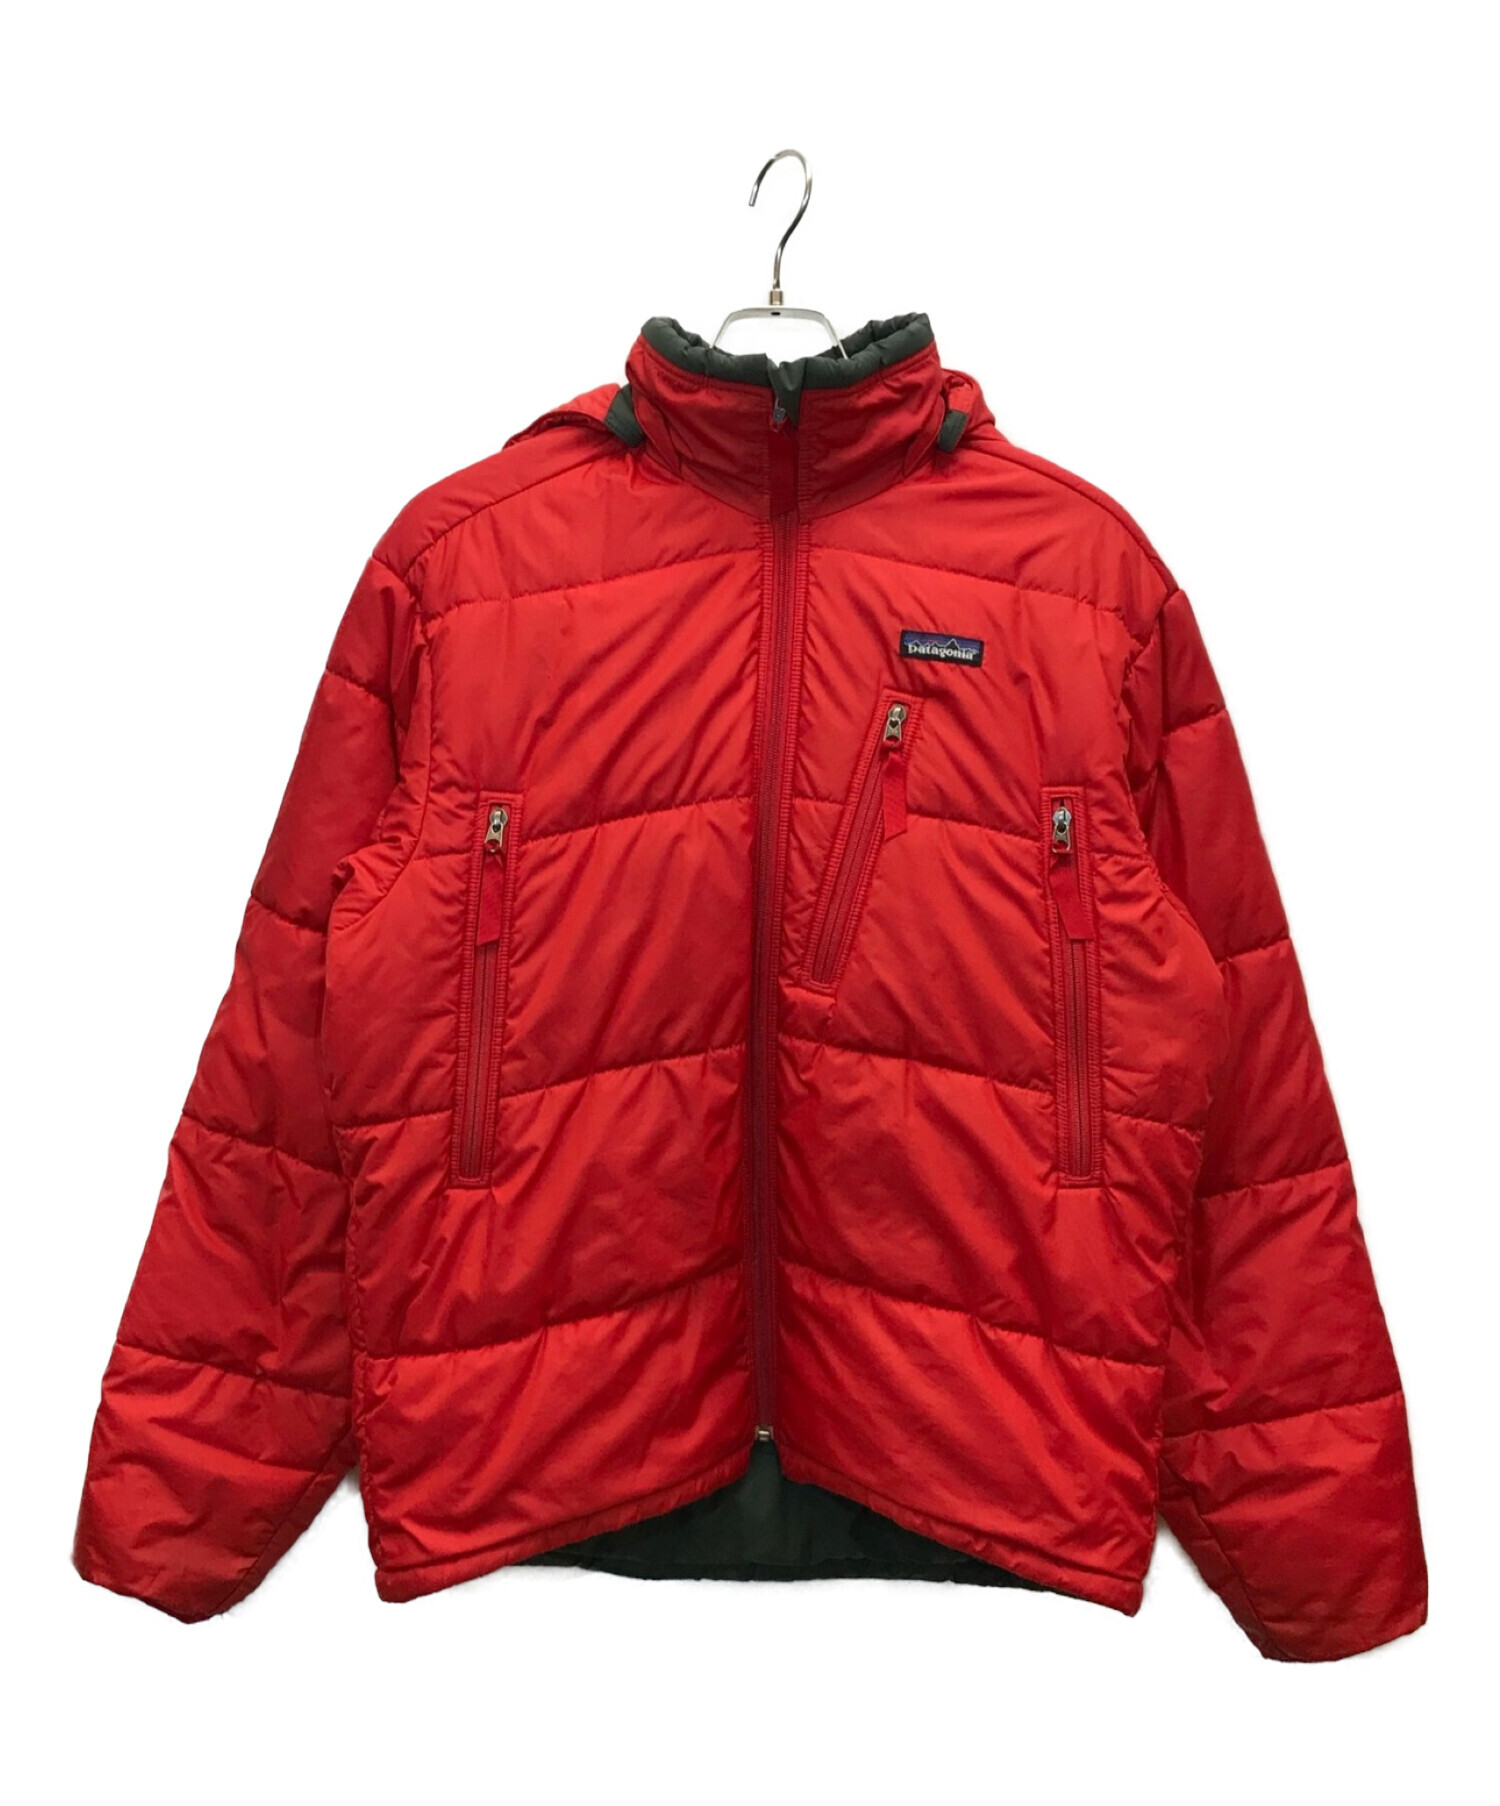 パタゴニア パフジャケット キムタク patagonia puff jacket - メンズ